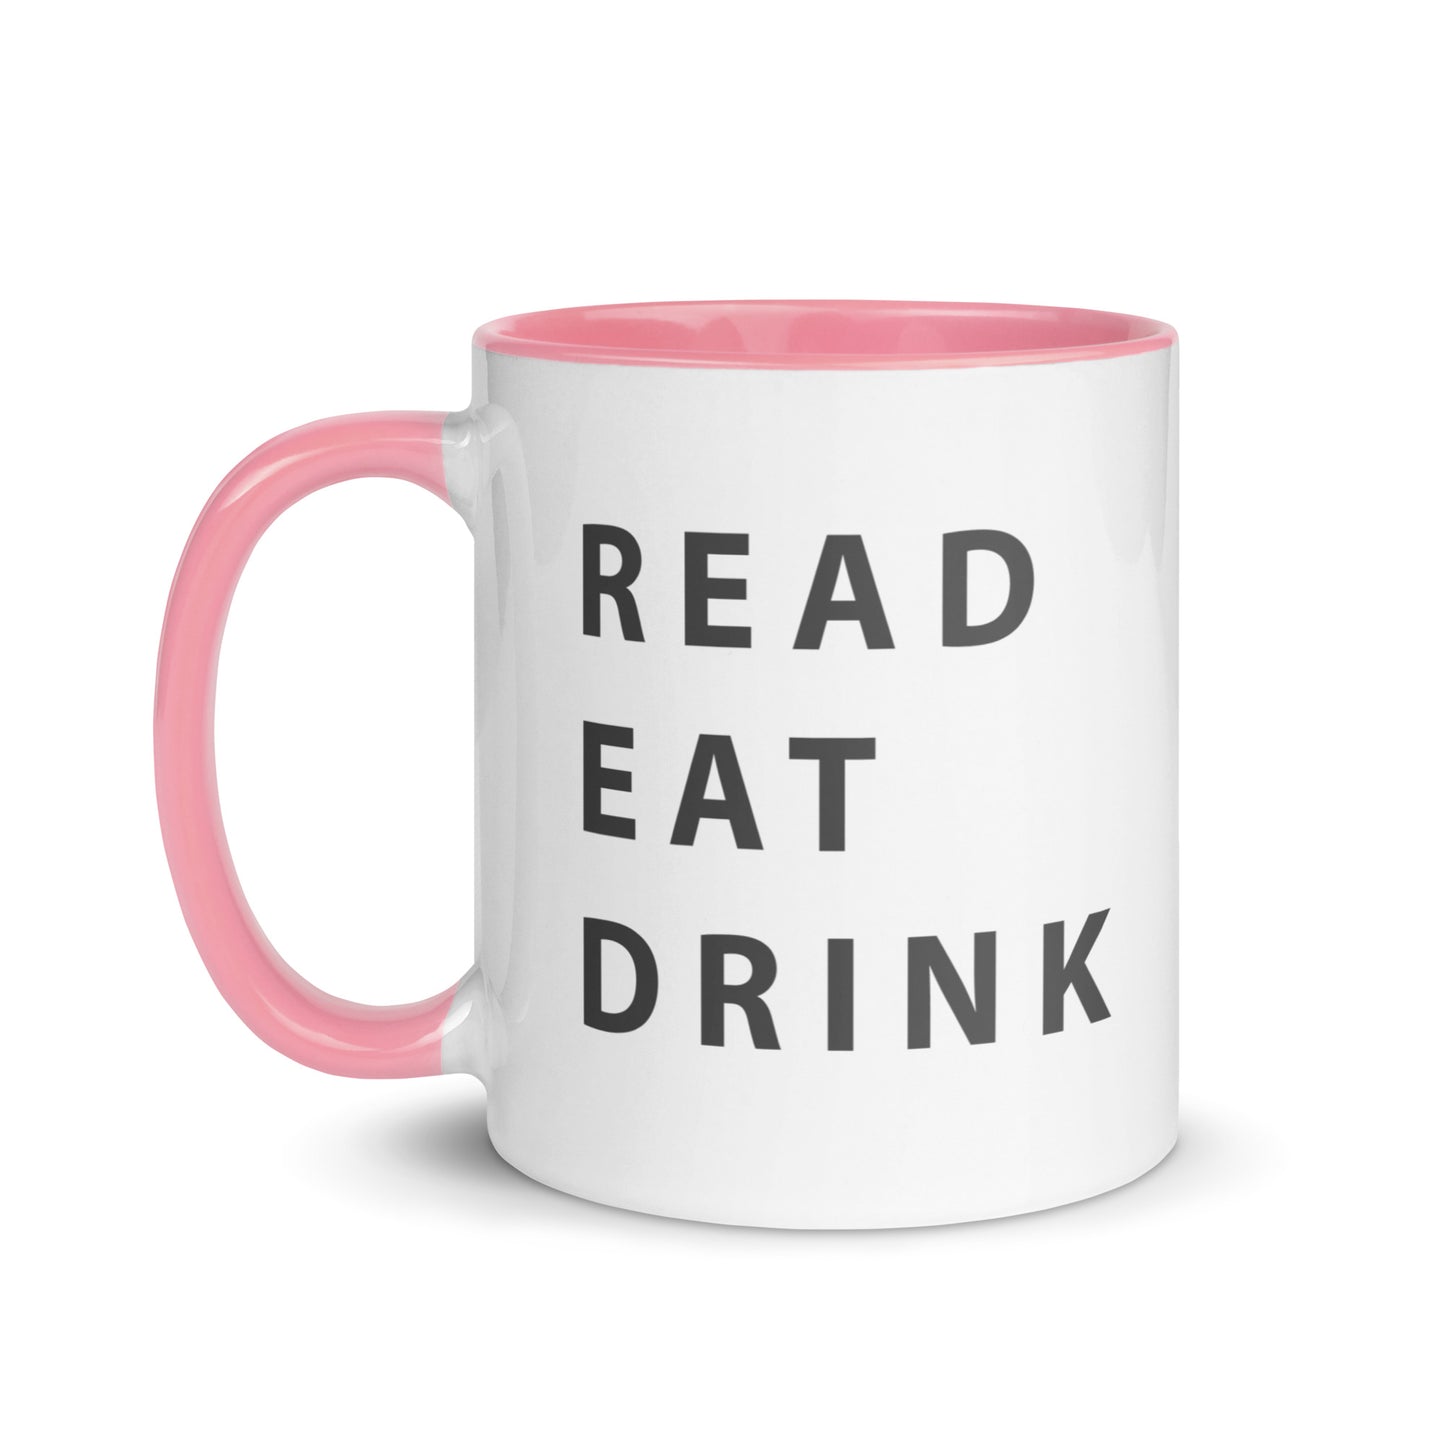 Read. Eat. Drink. Mug with Color Inside - 11 fl oz